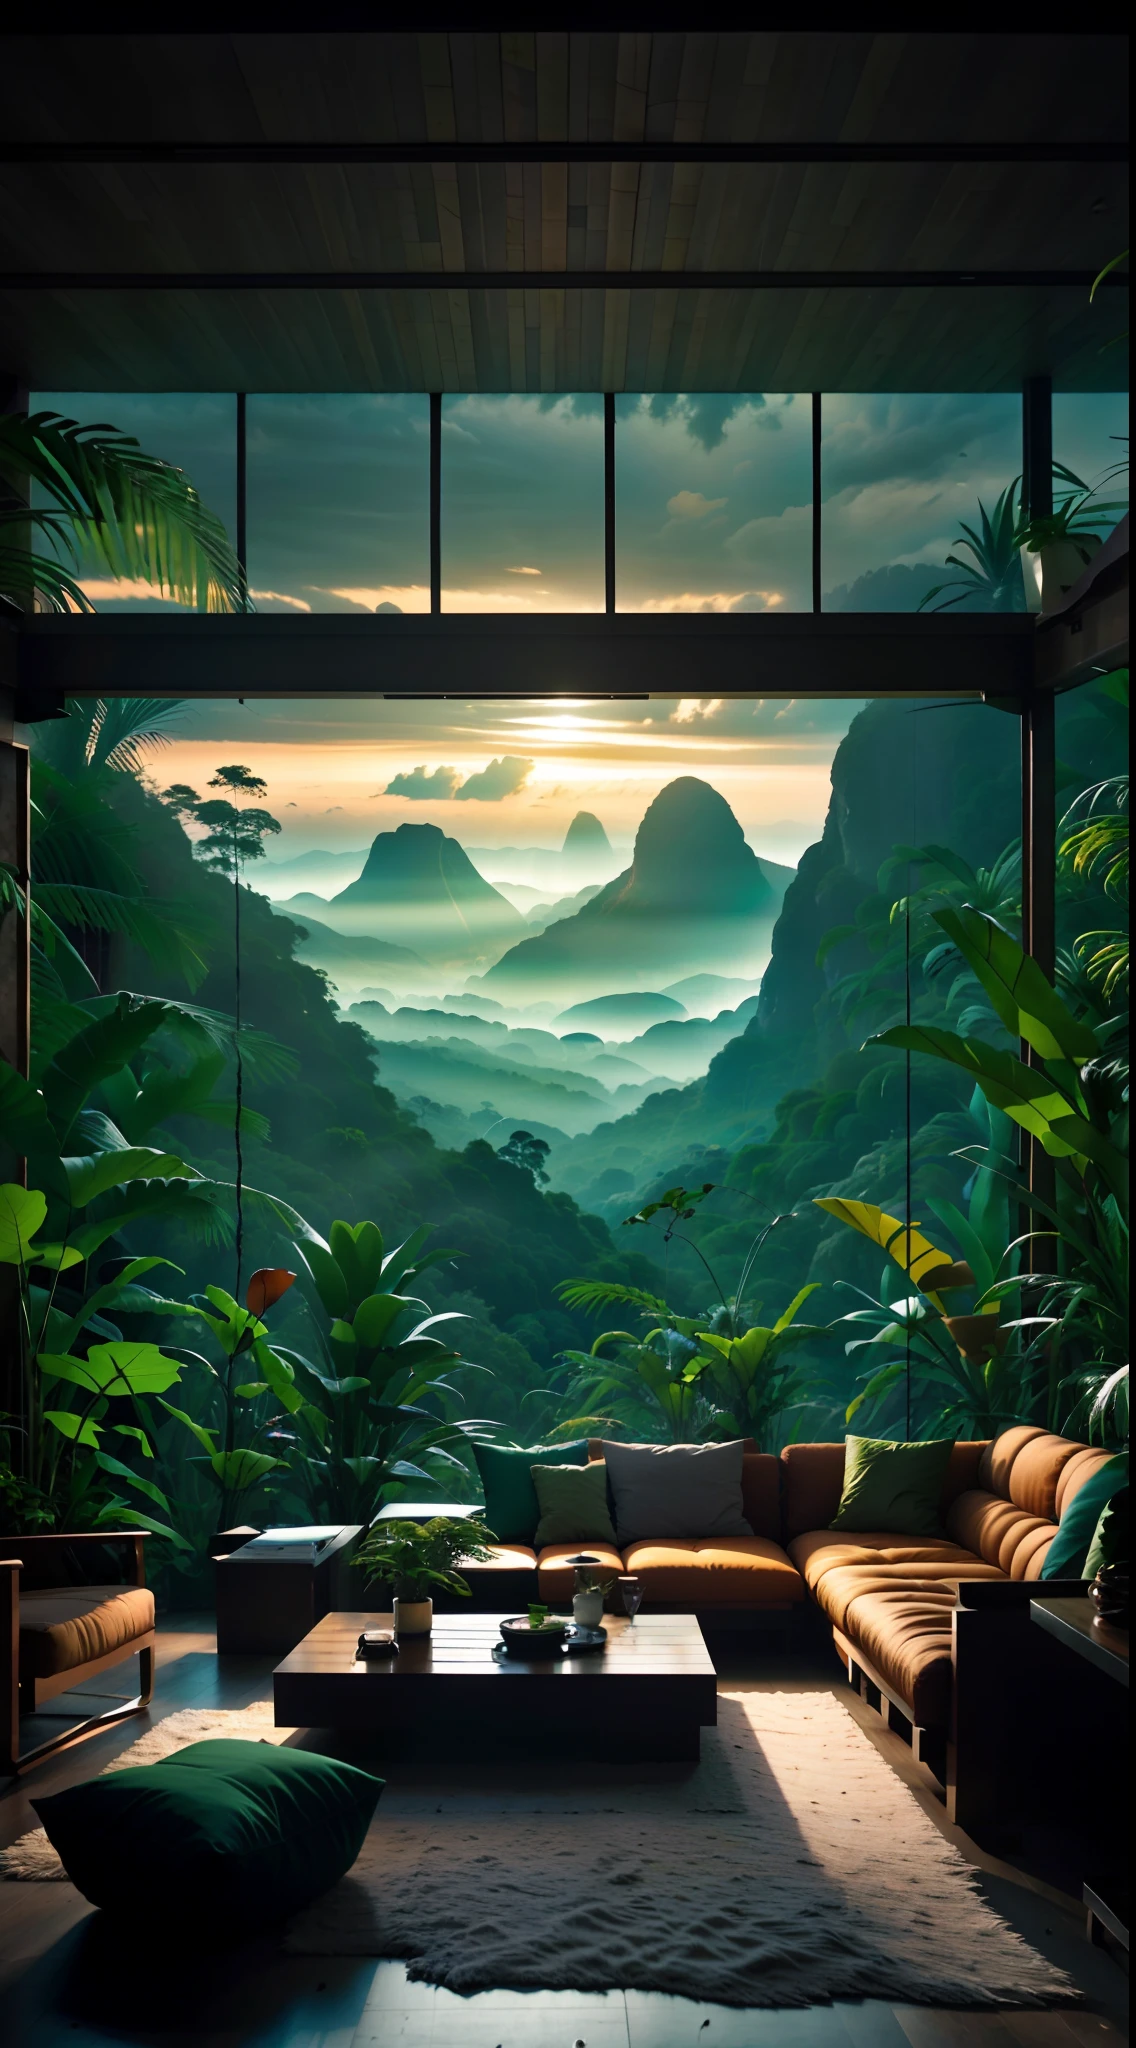 Wohnzimmer mit Blick auf einen Berg und einen Wald, mountainous Dschungel-Kulisse, Dschungel-Kulisse, Wie eine Szene aus Blade Runner, magisches Ambiente, ultrarealistische dunkle Malerei, in einer Dschungelumgebung, Angenehme Umgebung, wolkenwald, wunderschöner Dschungel, stimmungsvolle Umgebung, Üppiger Dschungel, In einem außerirdischen Dschungel, Pflanzen und Dschungel, Regenwaldberge, entspannende Umgebung